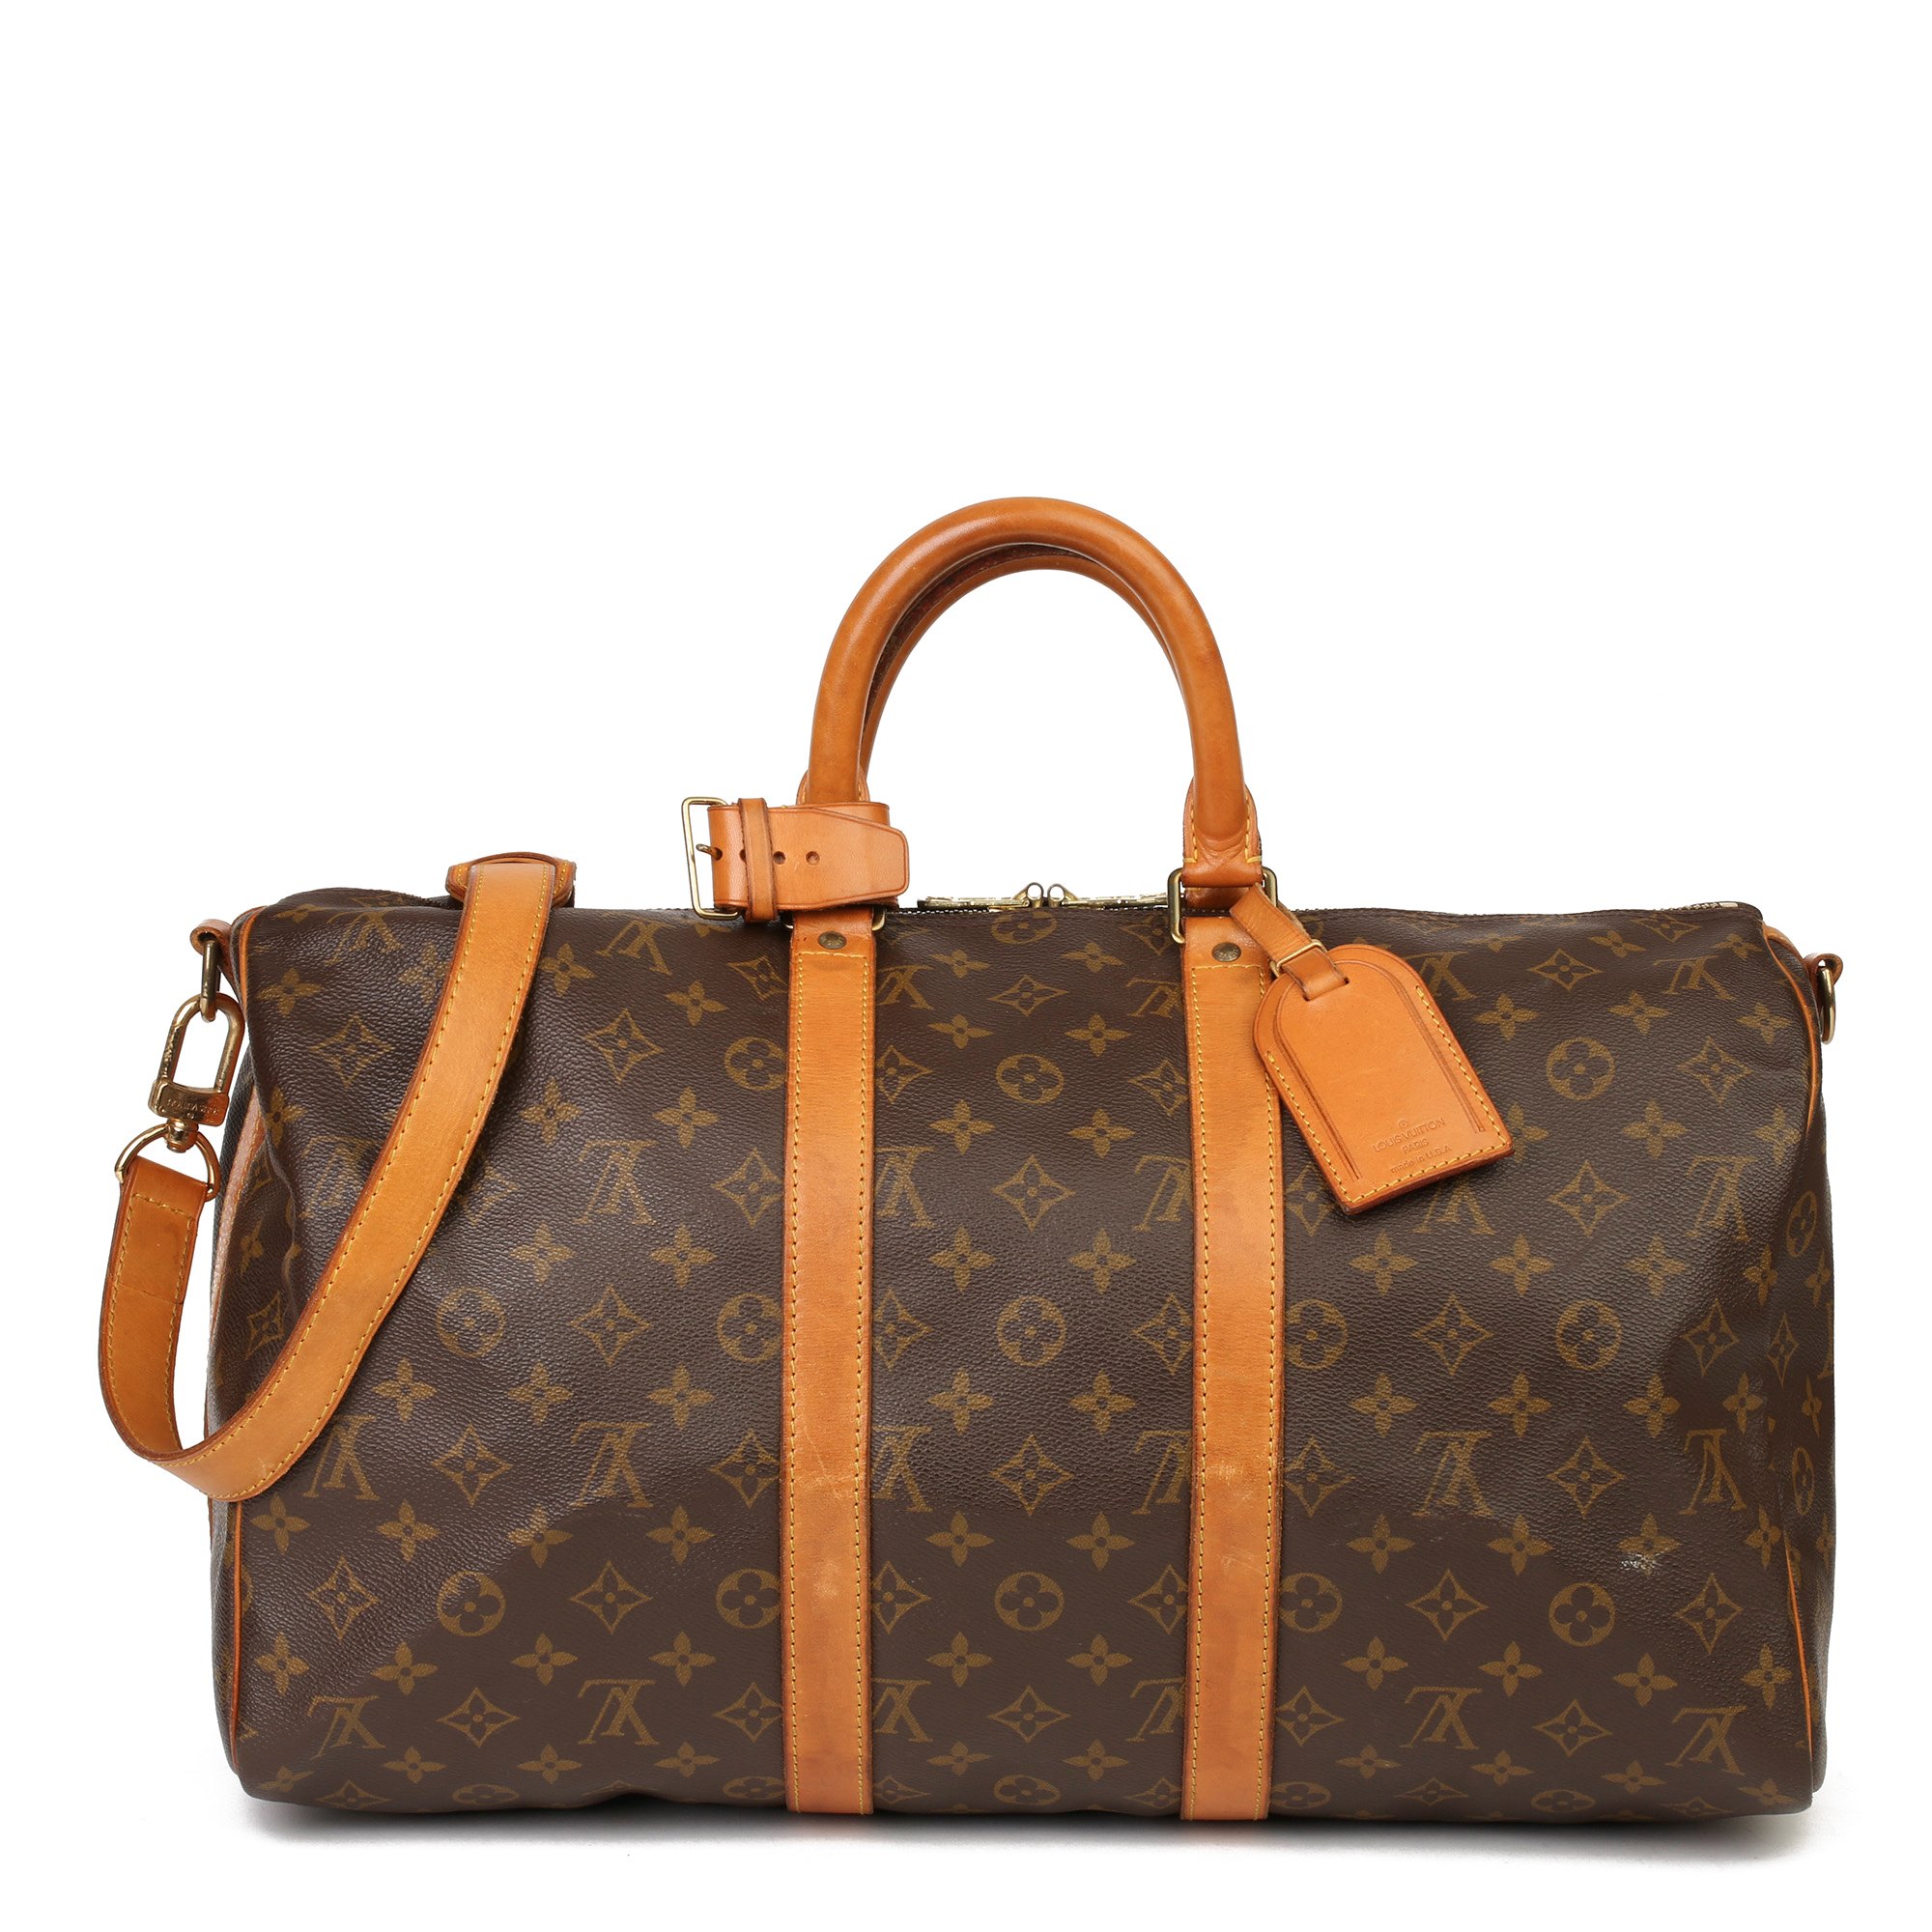 Louis Vuitton 45 HB3693 | Second Hand Handbags